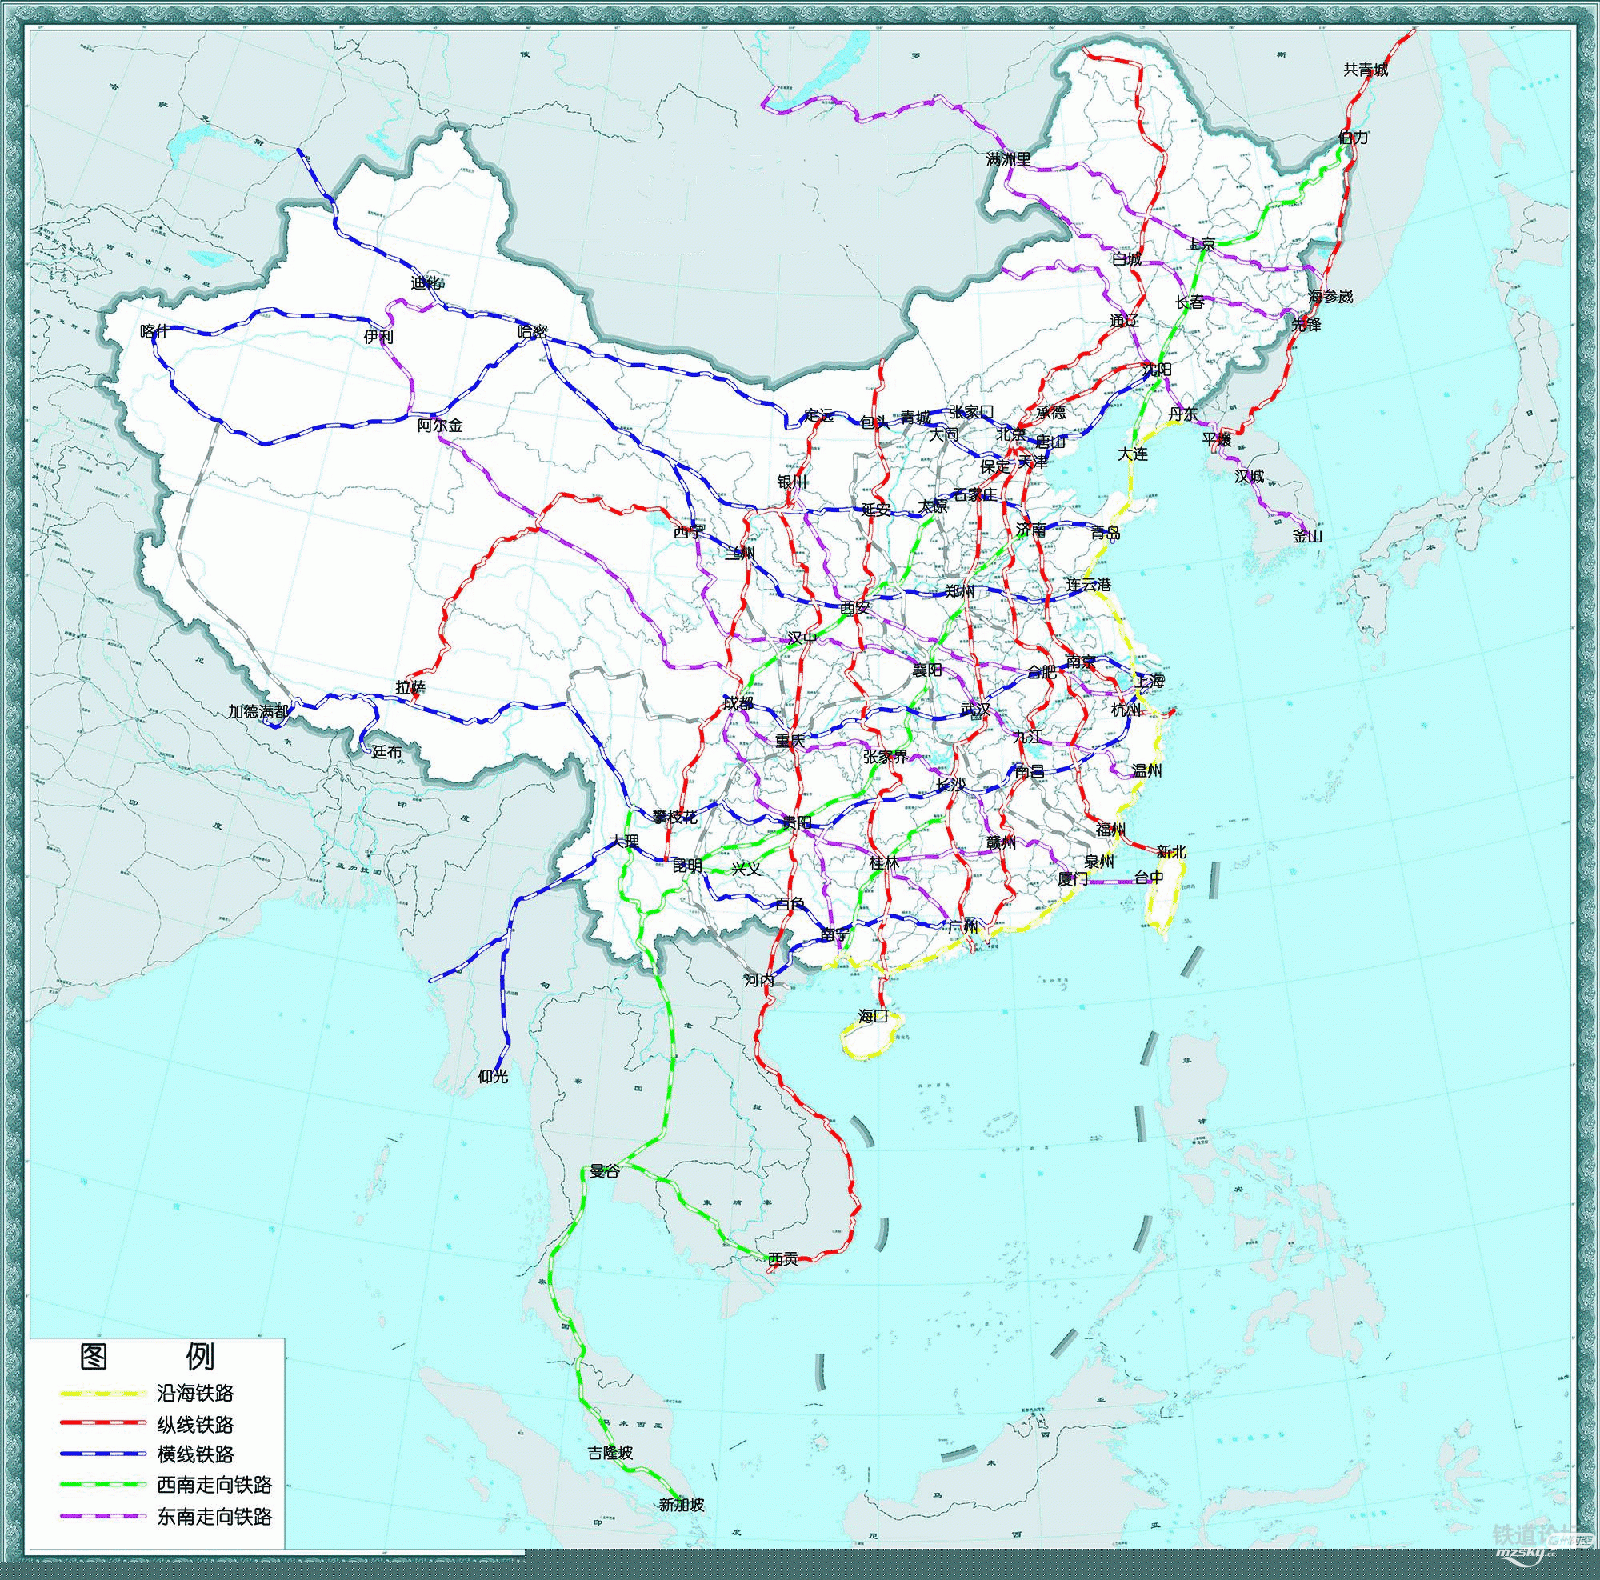 黄大铁路线路高清图_中国铁路线路_中国铁路总公司铁路线路图